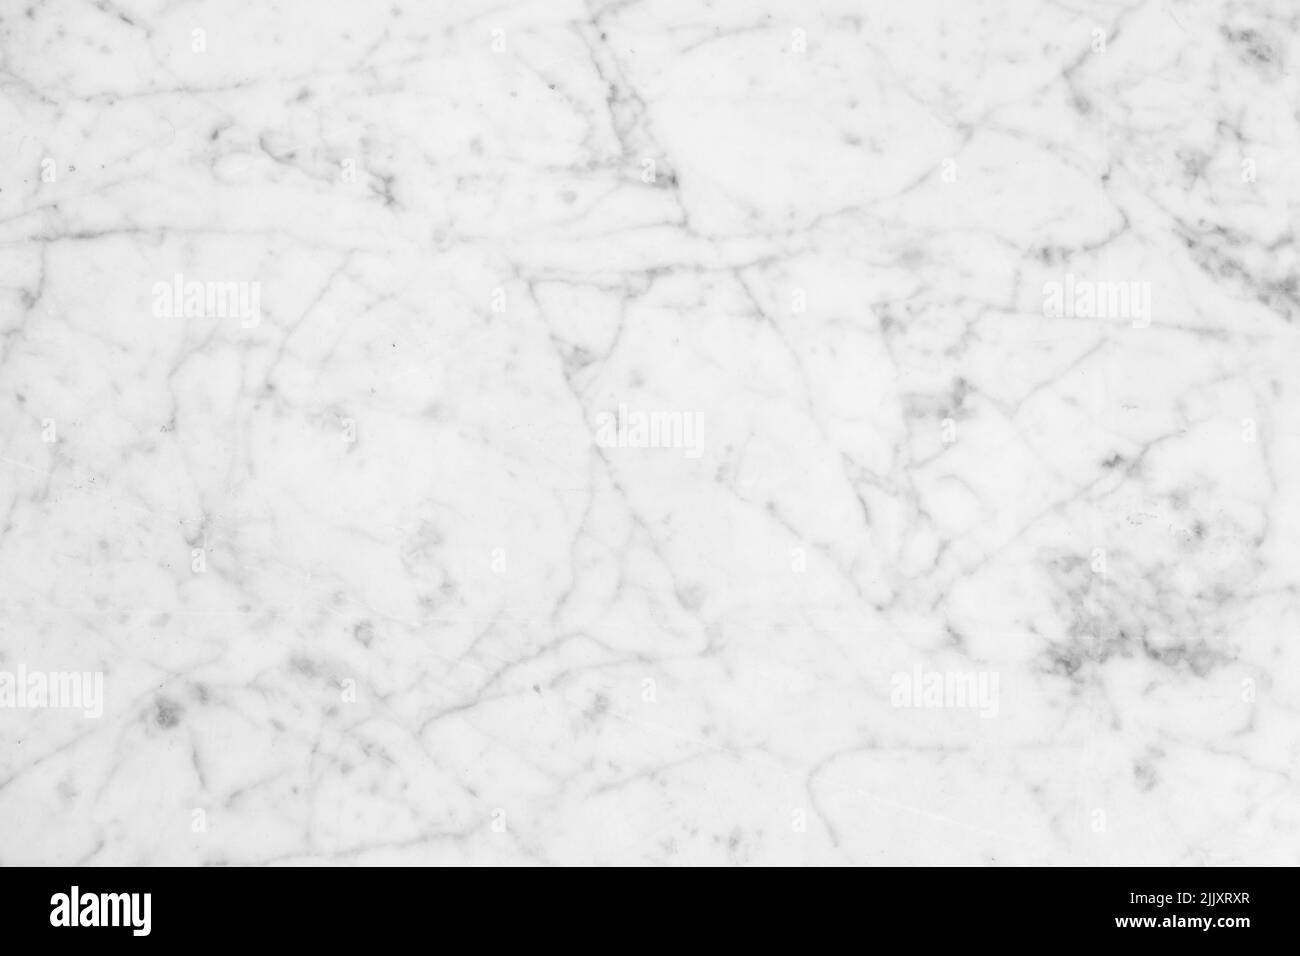 Motivo in marmo bianco con venature grigie, vista frontale. Foto di sfondo piastra in pietra naturale Foto Stock